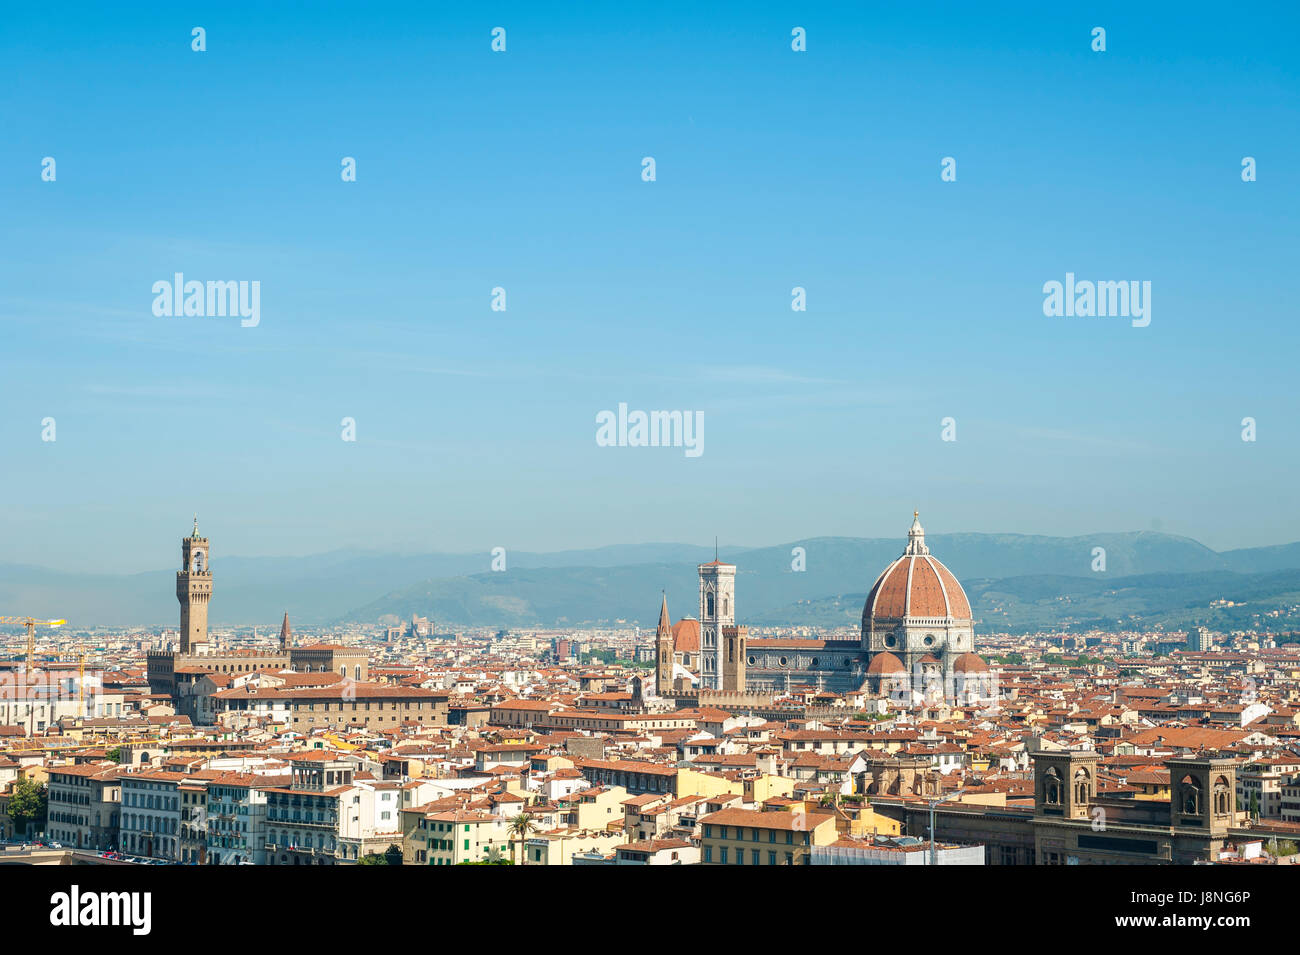 Superbe vue sur l'horizon de Florence, Italie dominé par le dôme de terre cuite de la Cattedrale di Santa Maria del Fiore et la Tour de Arnolfo Banque D'Images